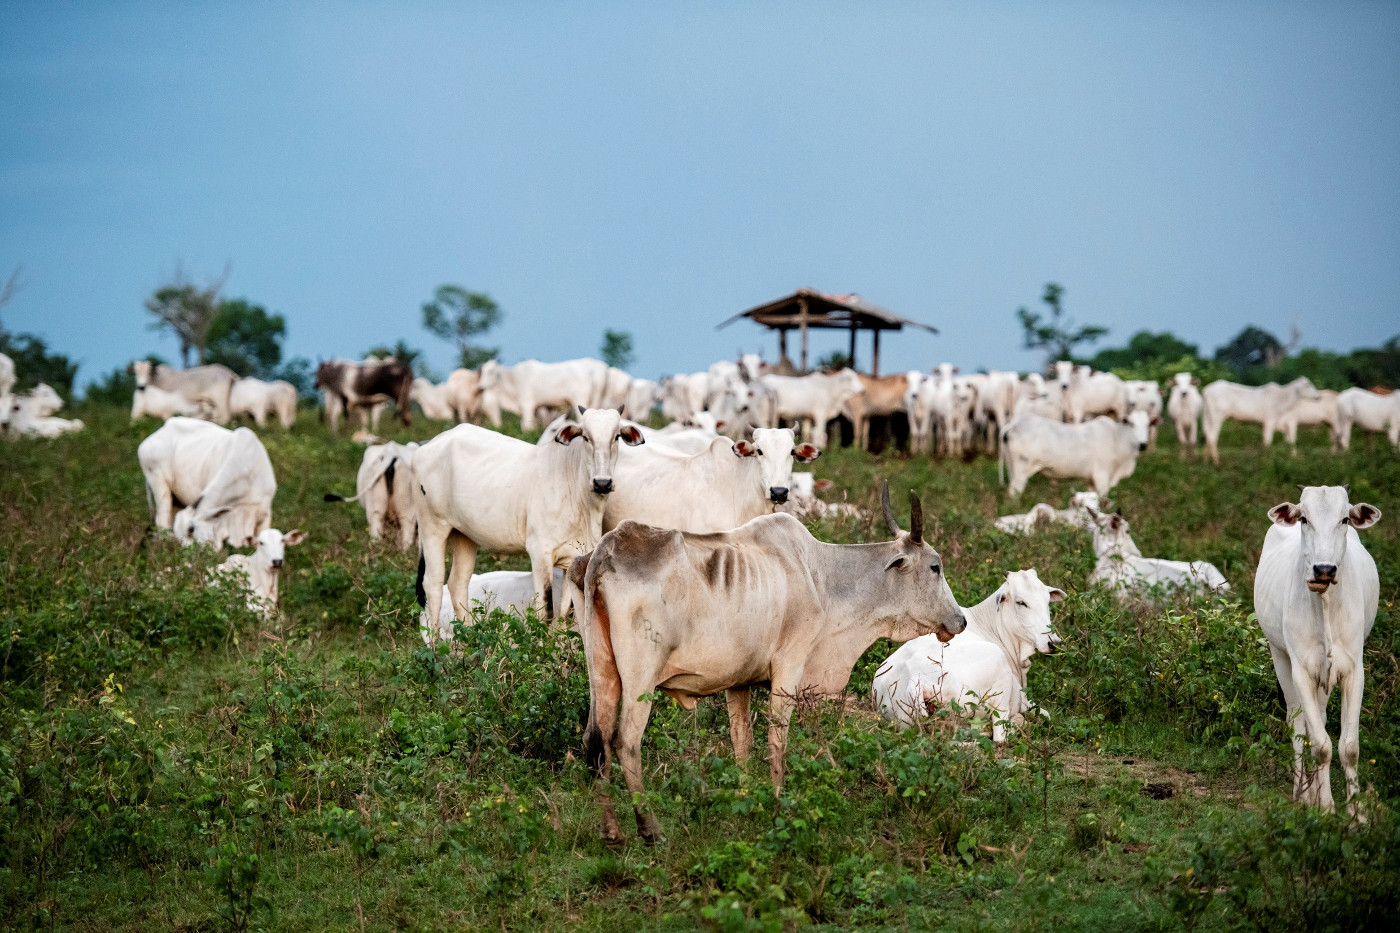 Rinderweiden auf abgeholzten Amazonas-Waldflächen zwischen Alenquer und Obidos in Brasilien. Foto: Adveniat/Florian Kopp